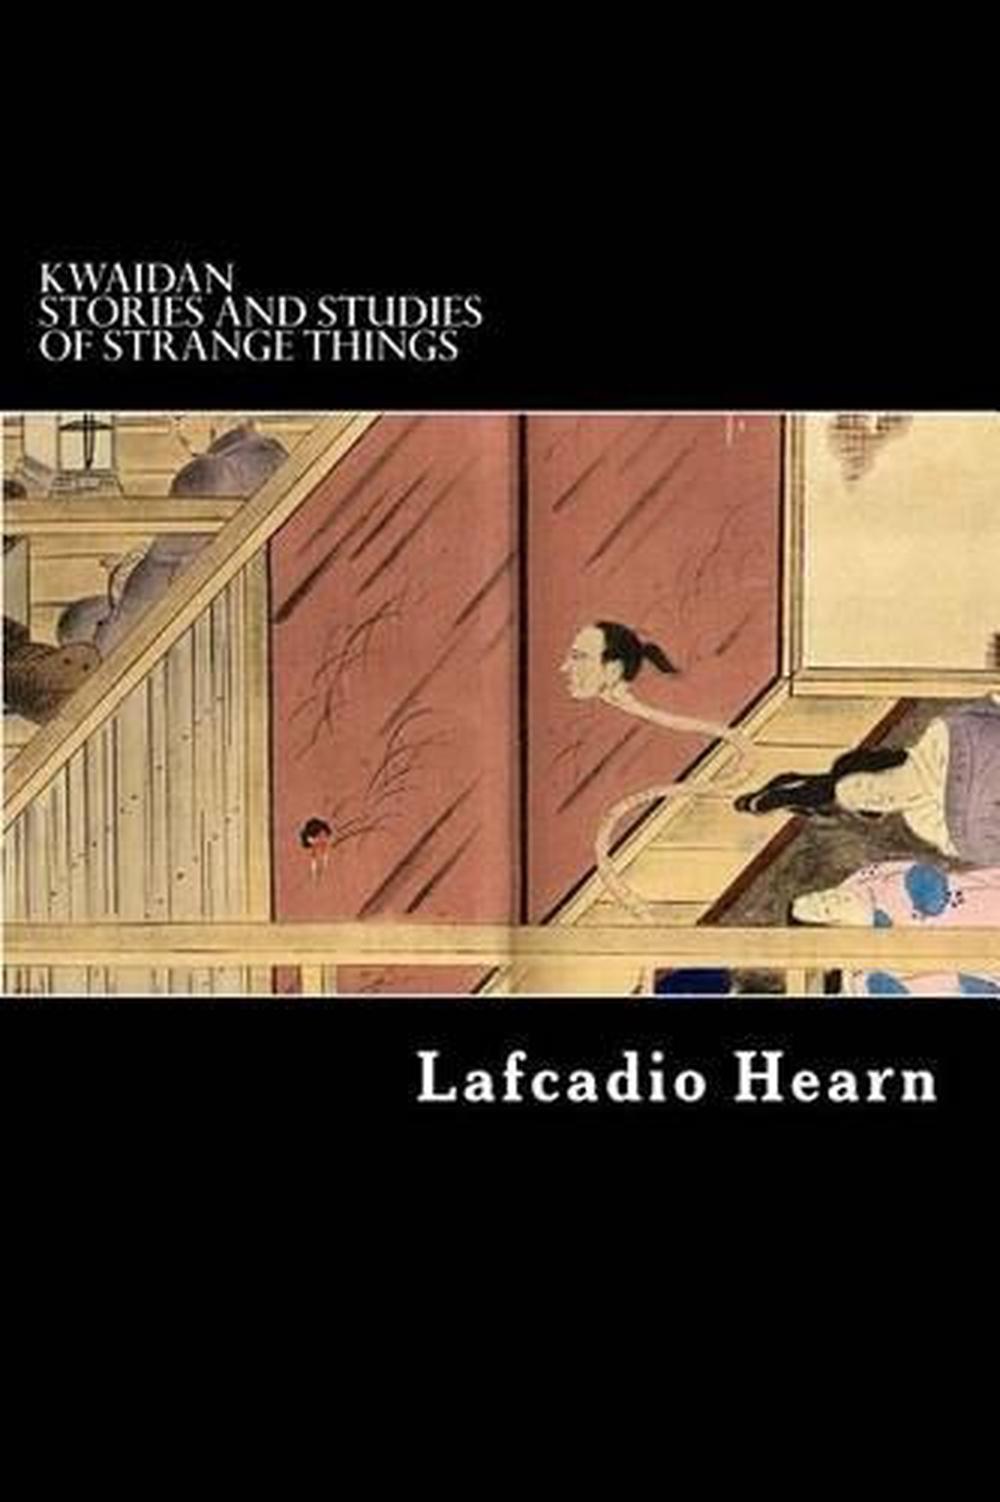 lafcadio hearn kwaidan stories and studies of strange things